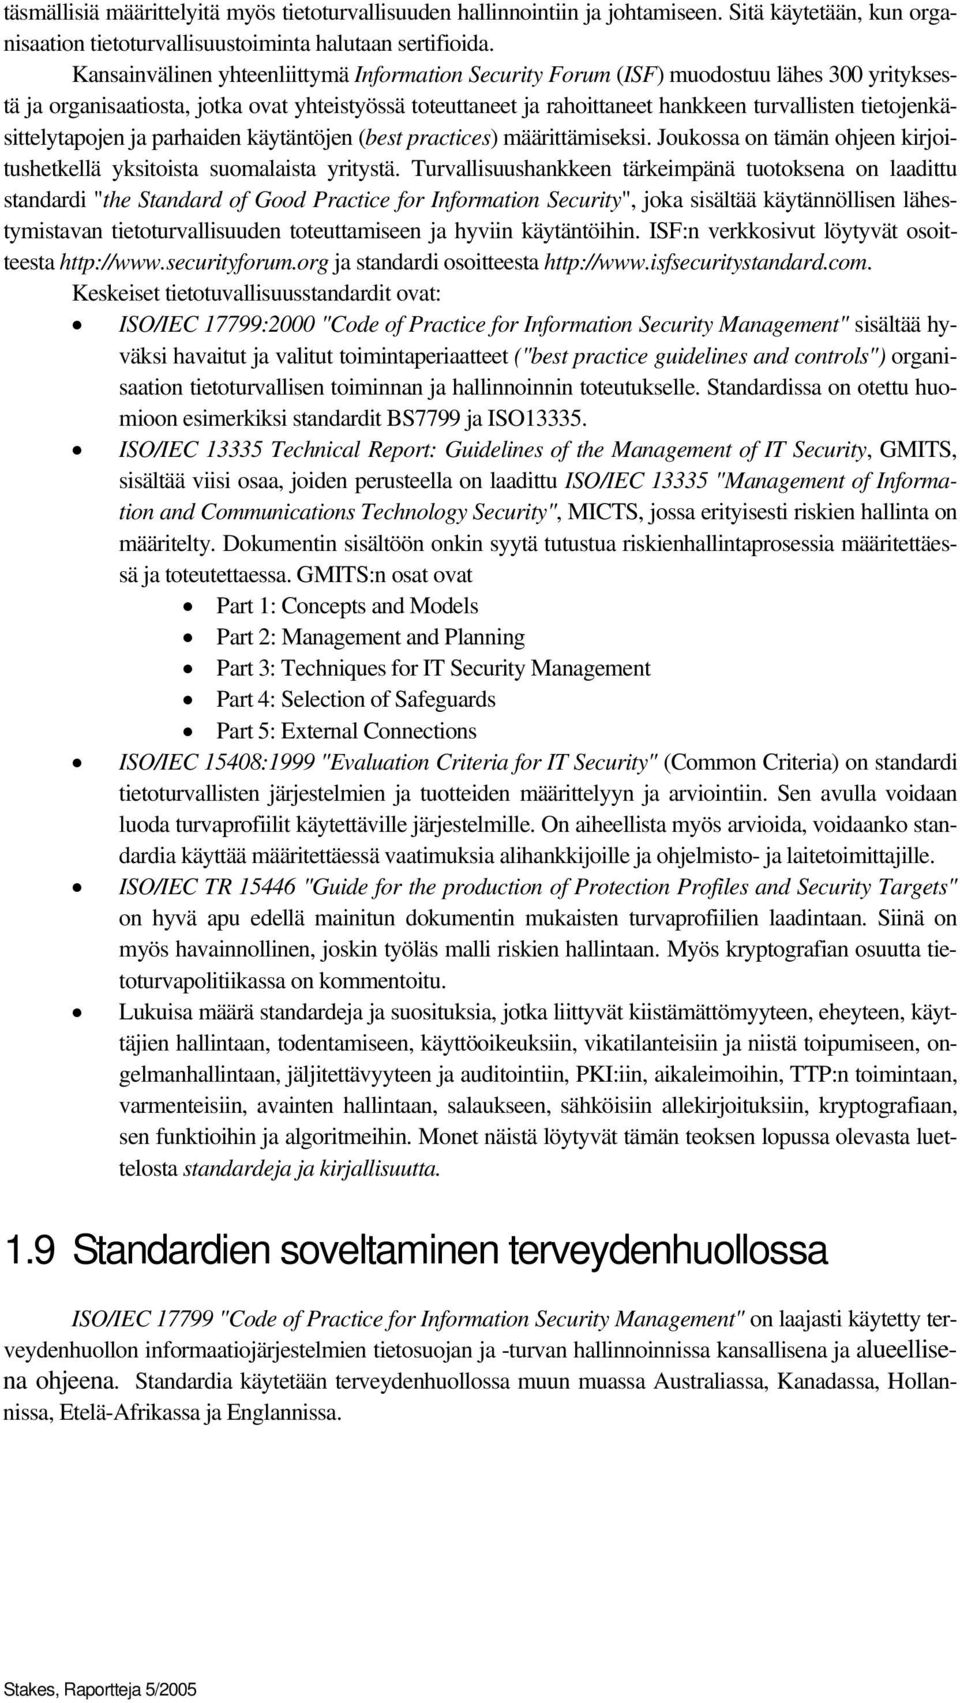 tietojenkäsittelytapojen ja parhaiden käytäntöjen (best practices) määrittämiseksi. Joukossa on tämän ohjeen kirjoitushetkellä yksitoista suomalaista yritystä.